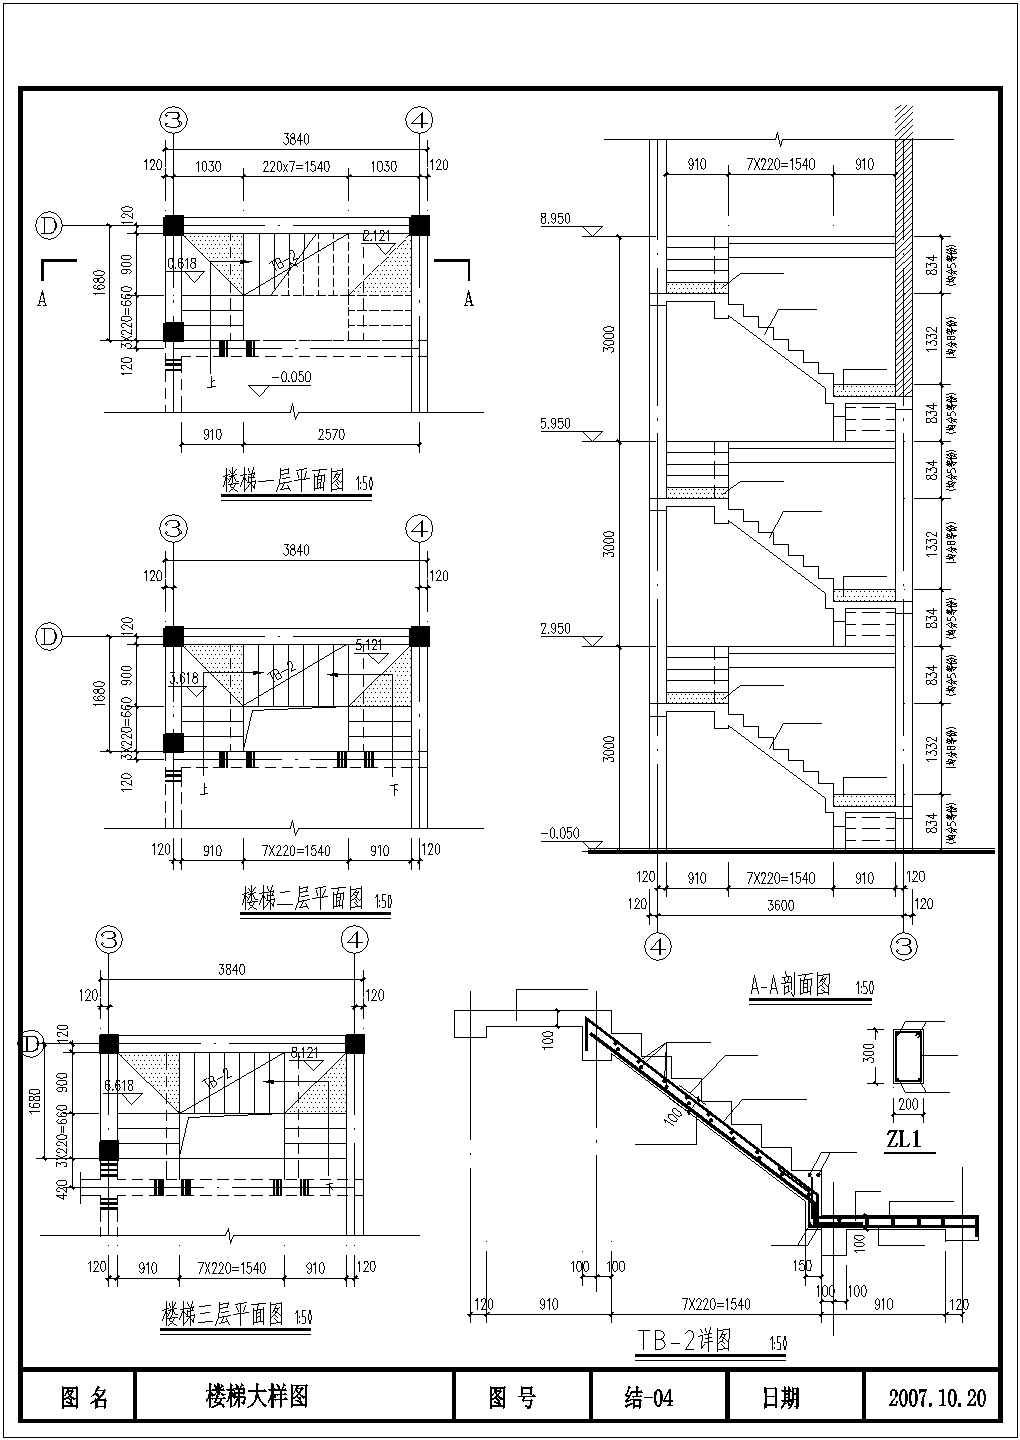 佛山市某村镇3层私建民居楼内部楼梯结构设计CAD图纸